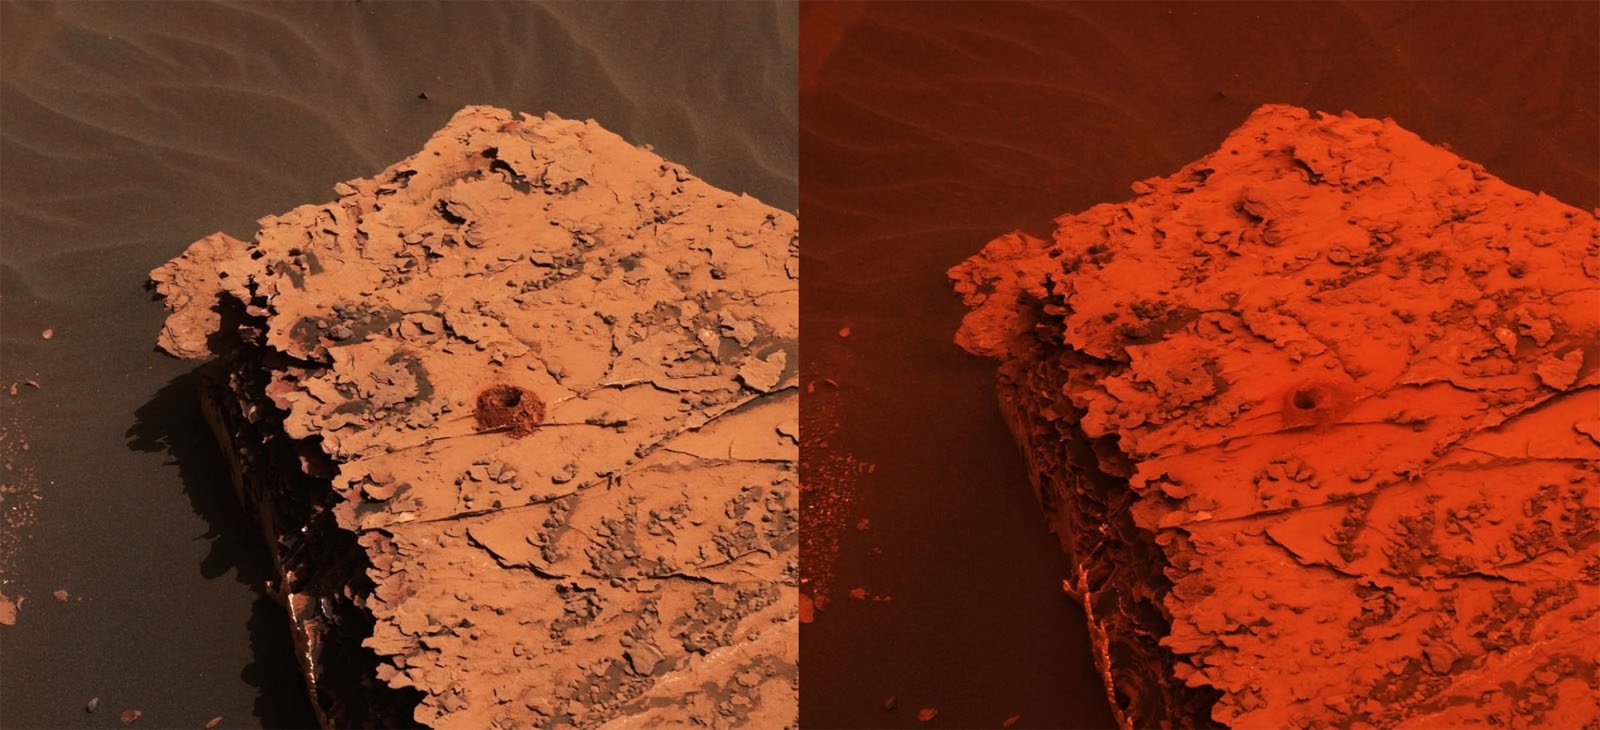 Марсоход Opportunity до сих пор молчит из-за пылевой бури на Марсе - 1